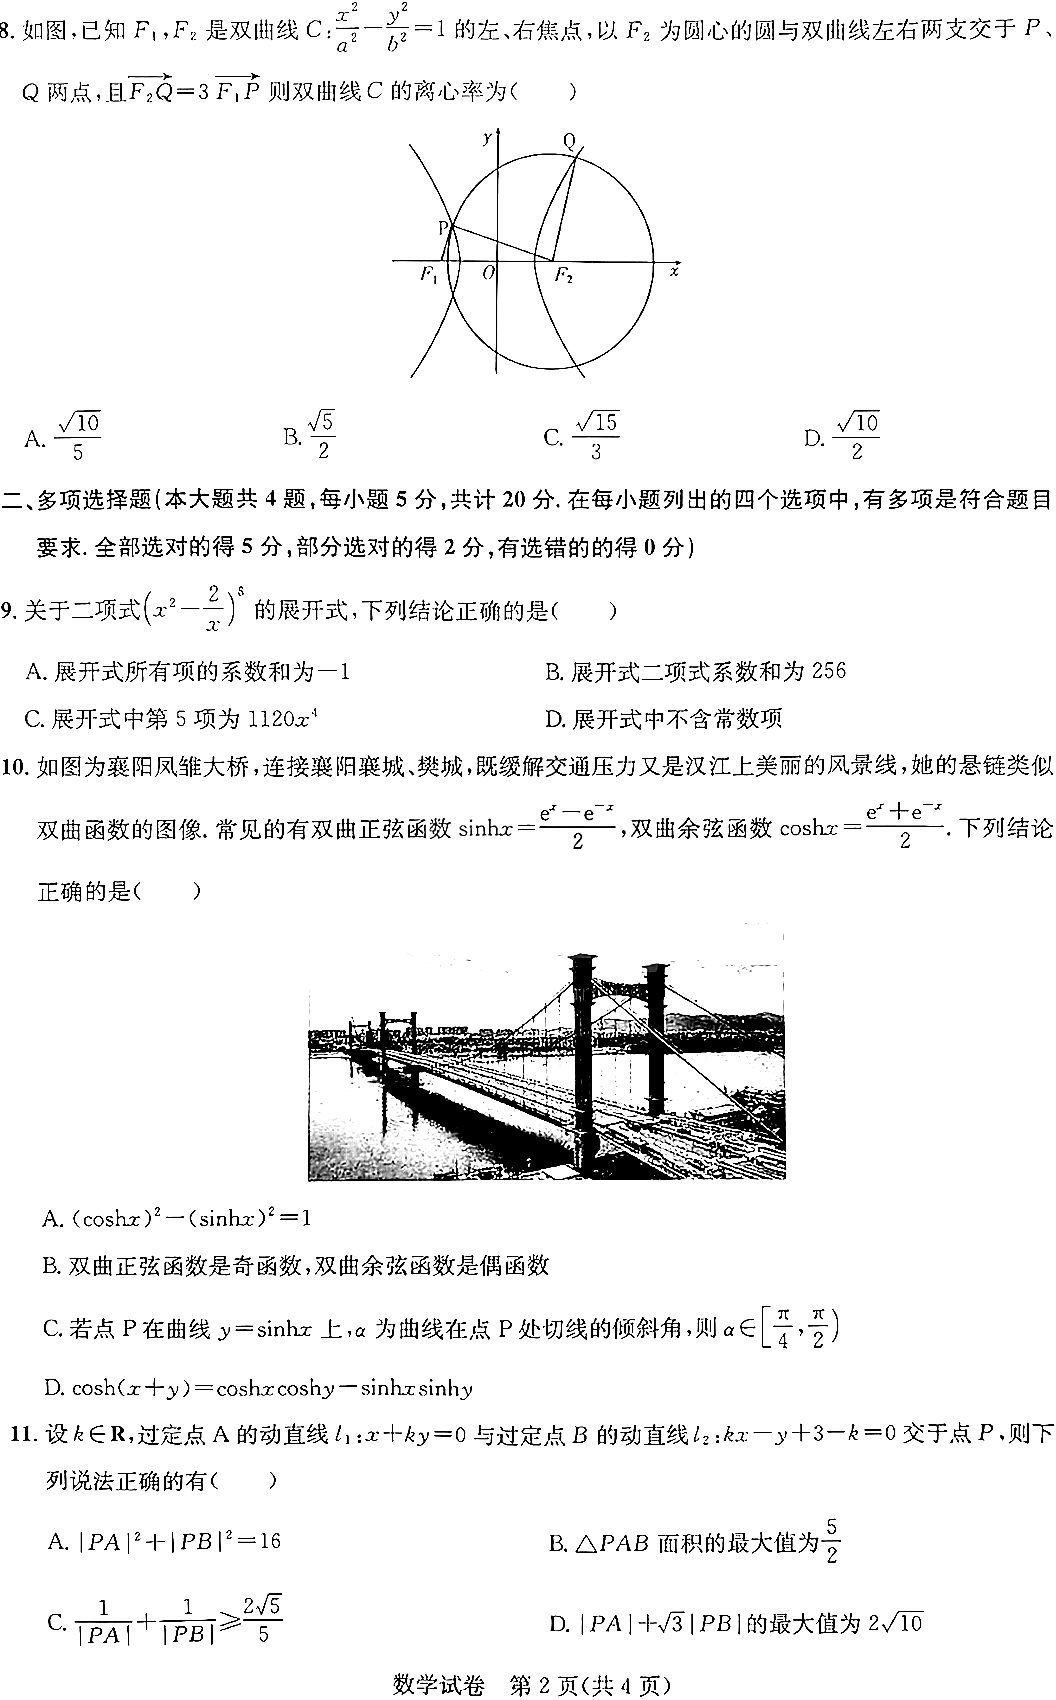 湖北省高中名校联盟2024届高三第二次测评数学试题